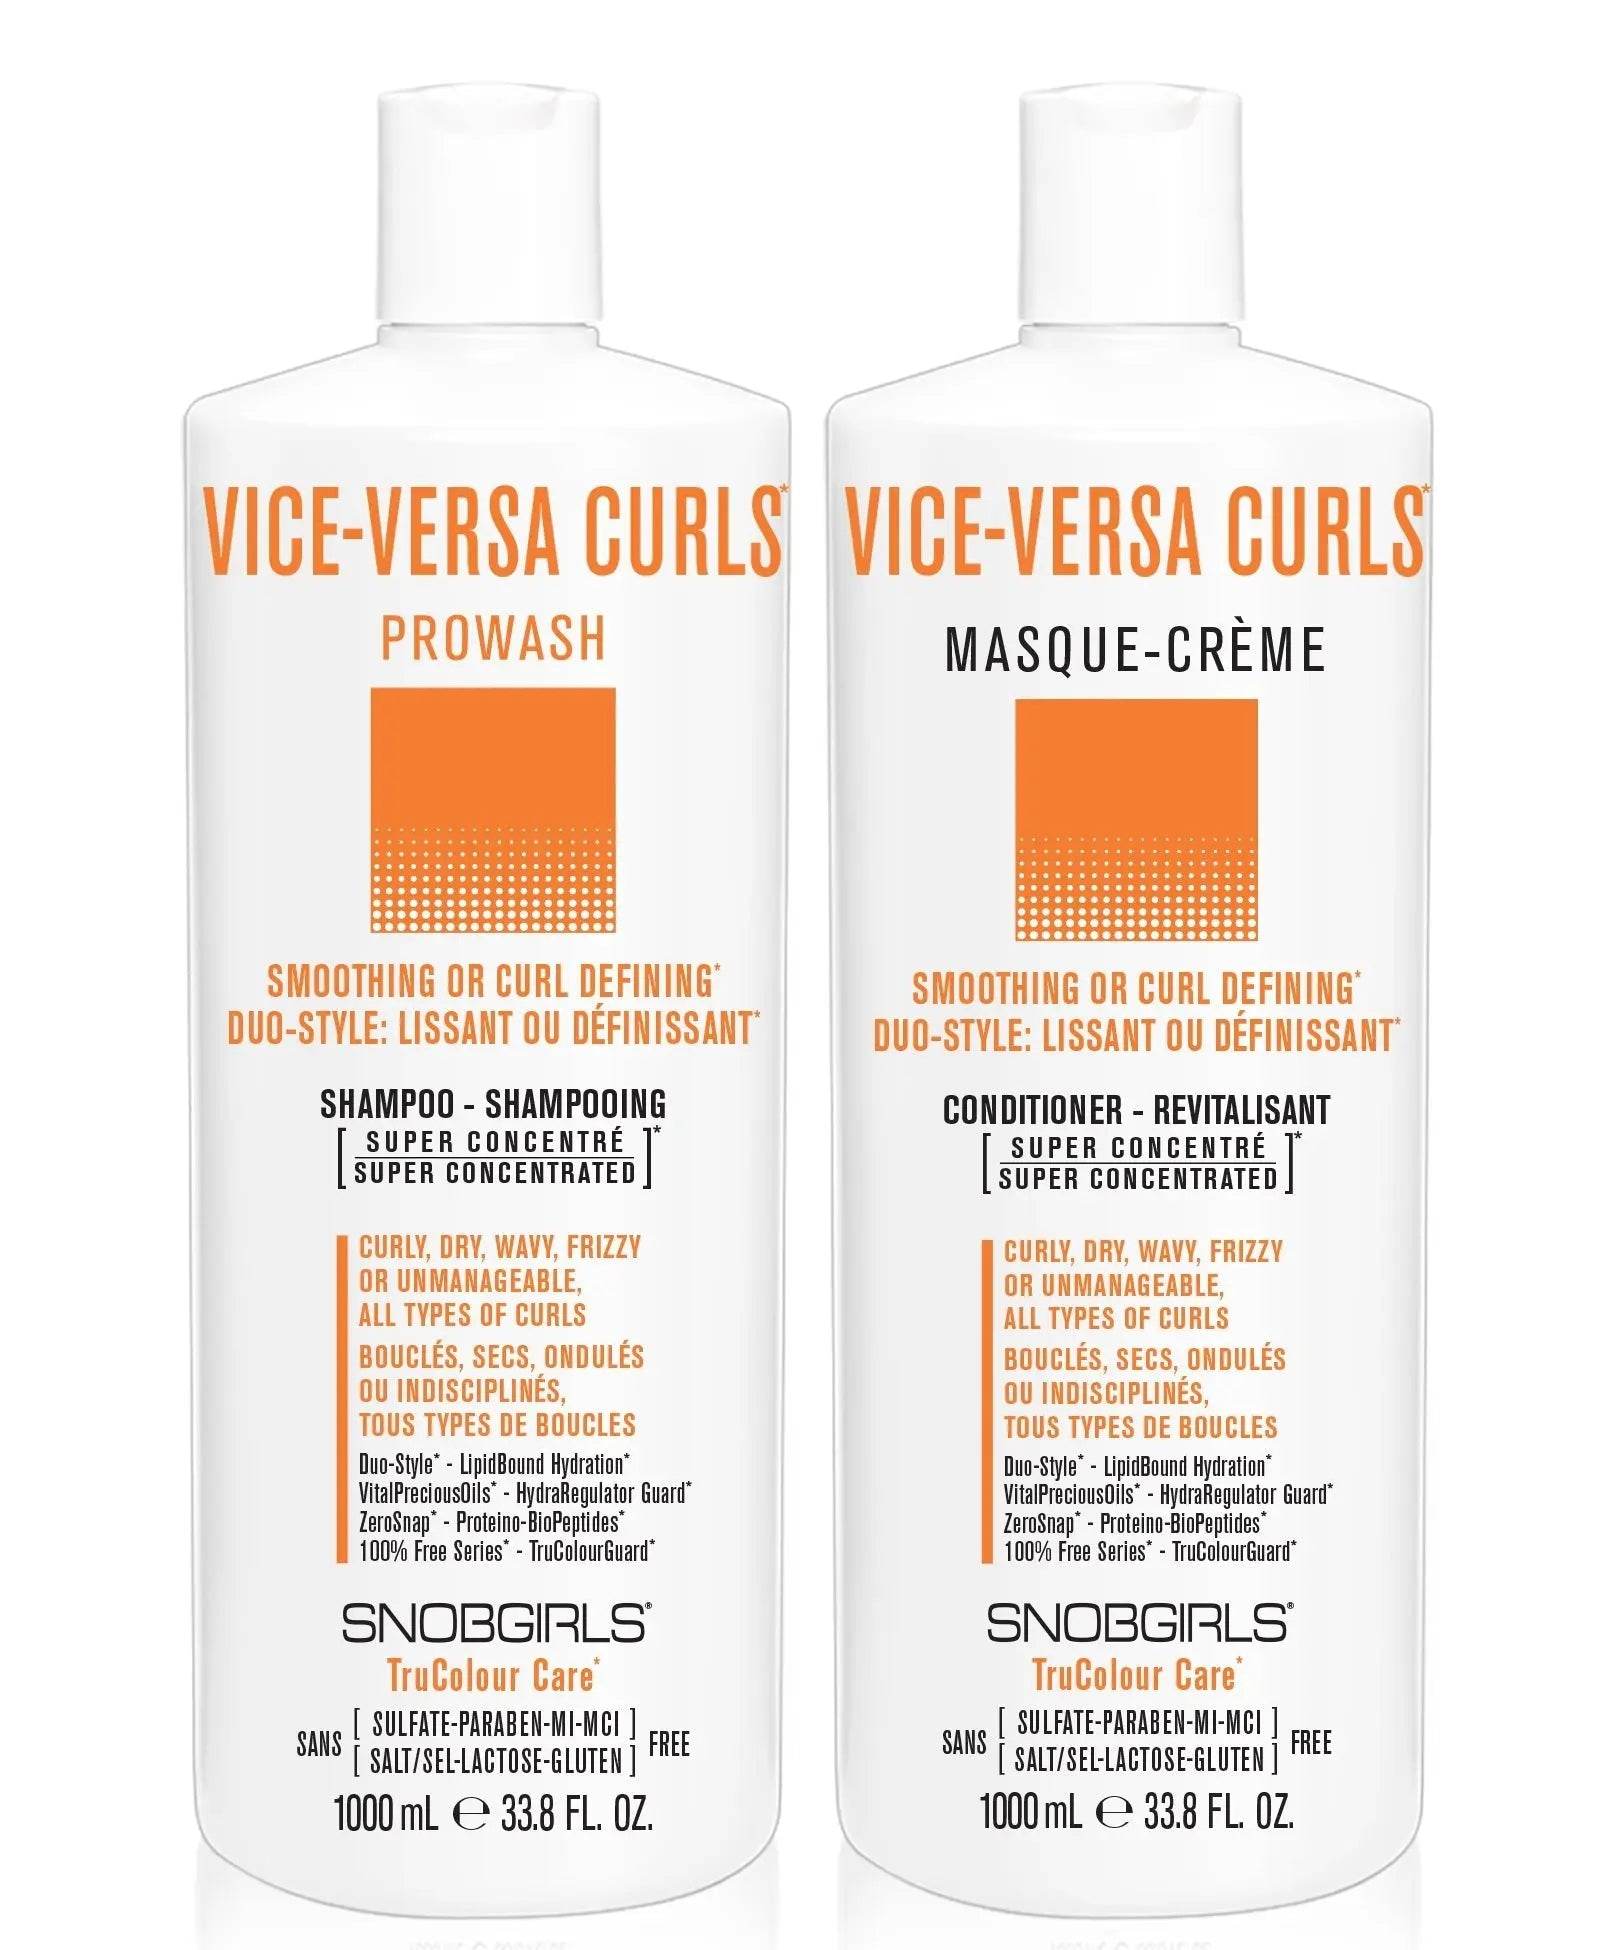 VICE-VERSA CURLS Shampoo Conditioner Duo 1000 mLVICE-VERSA CURLS Shampoo Conditioner Duo 1000 mLSNOBGIRLS Canada